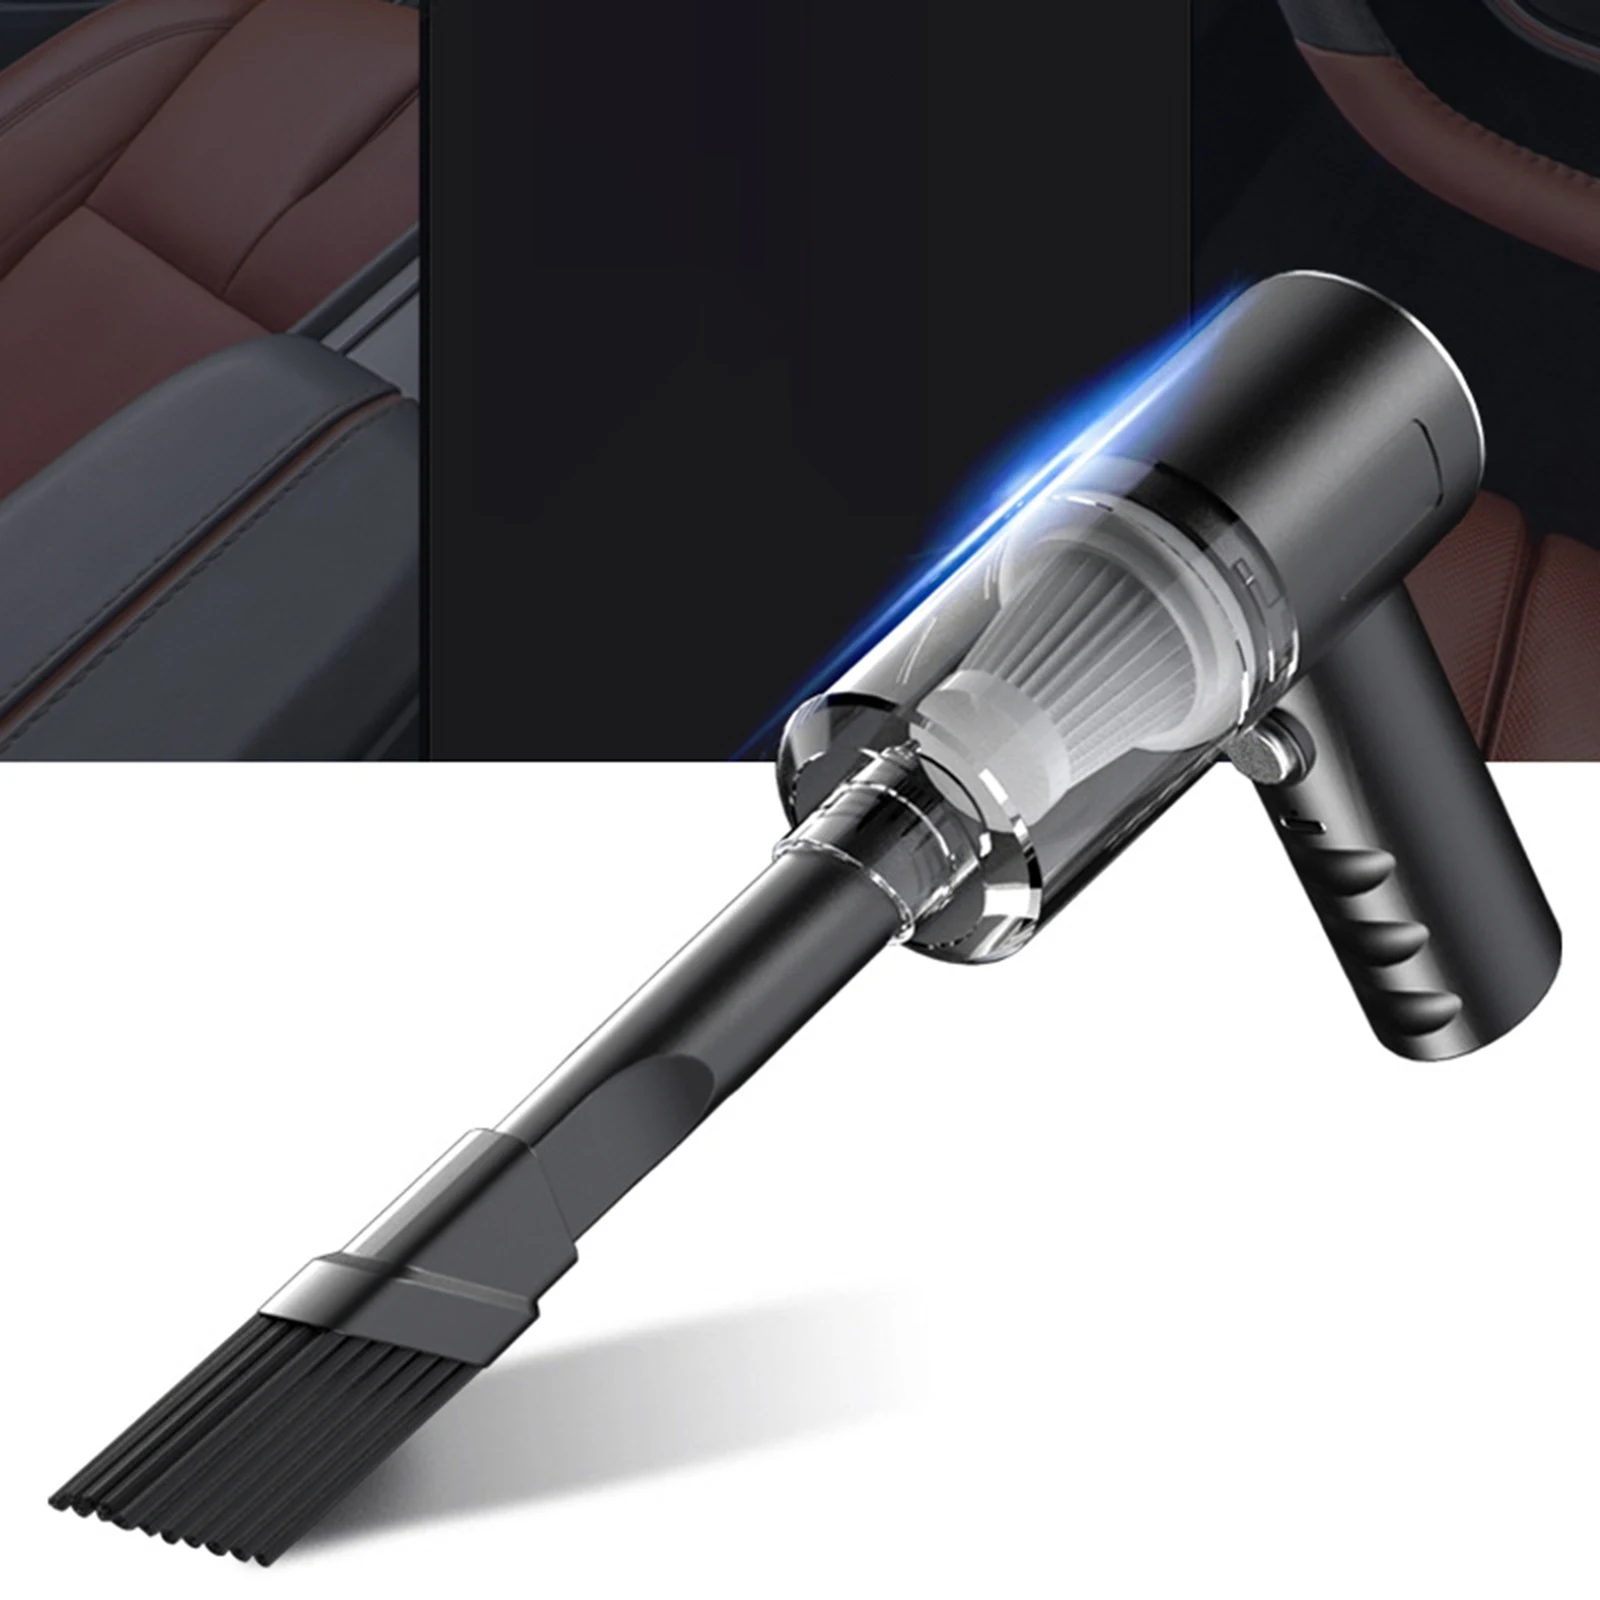 

120 Вт портативный автомобильный пылесос USB инструмент для очистки автомобиля автомобильные аксессуары автомобильный пылесос для офиса спальни путешествий автомобиля интерьера кухни